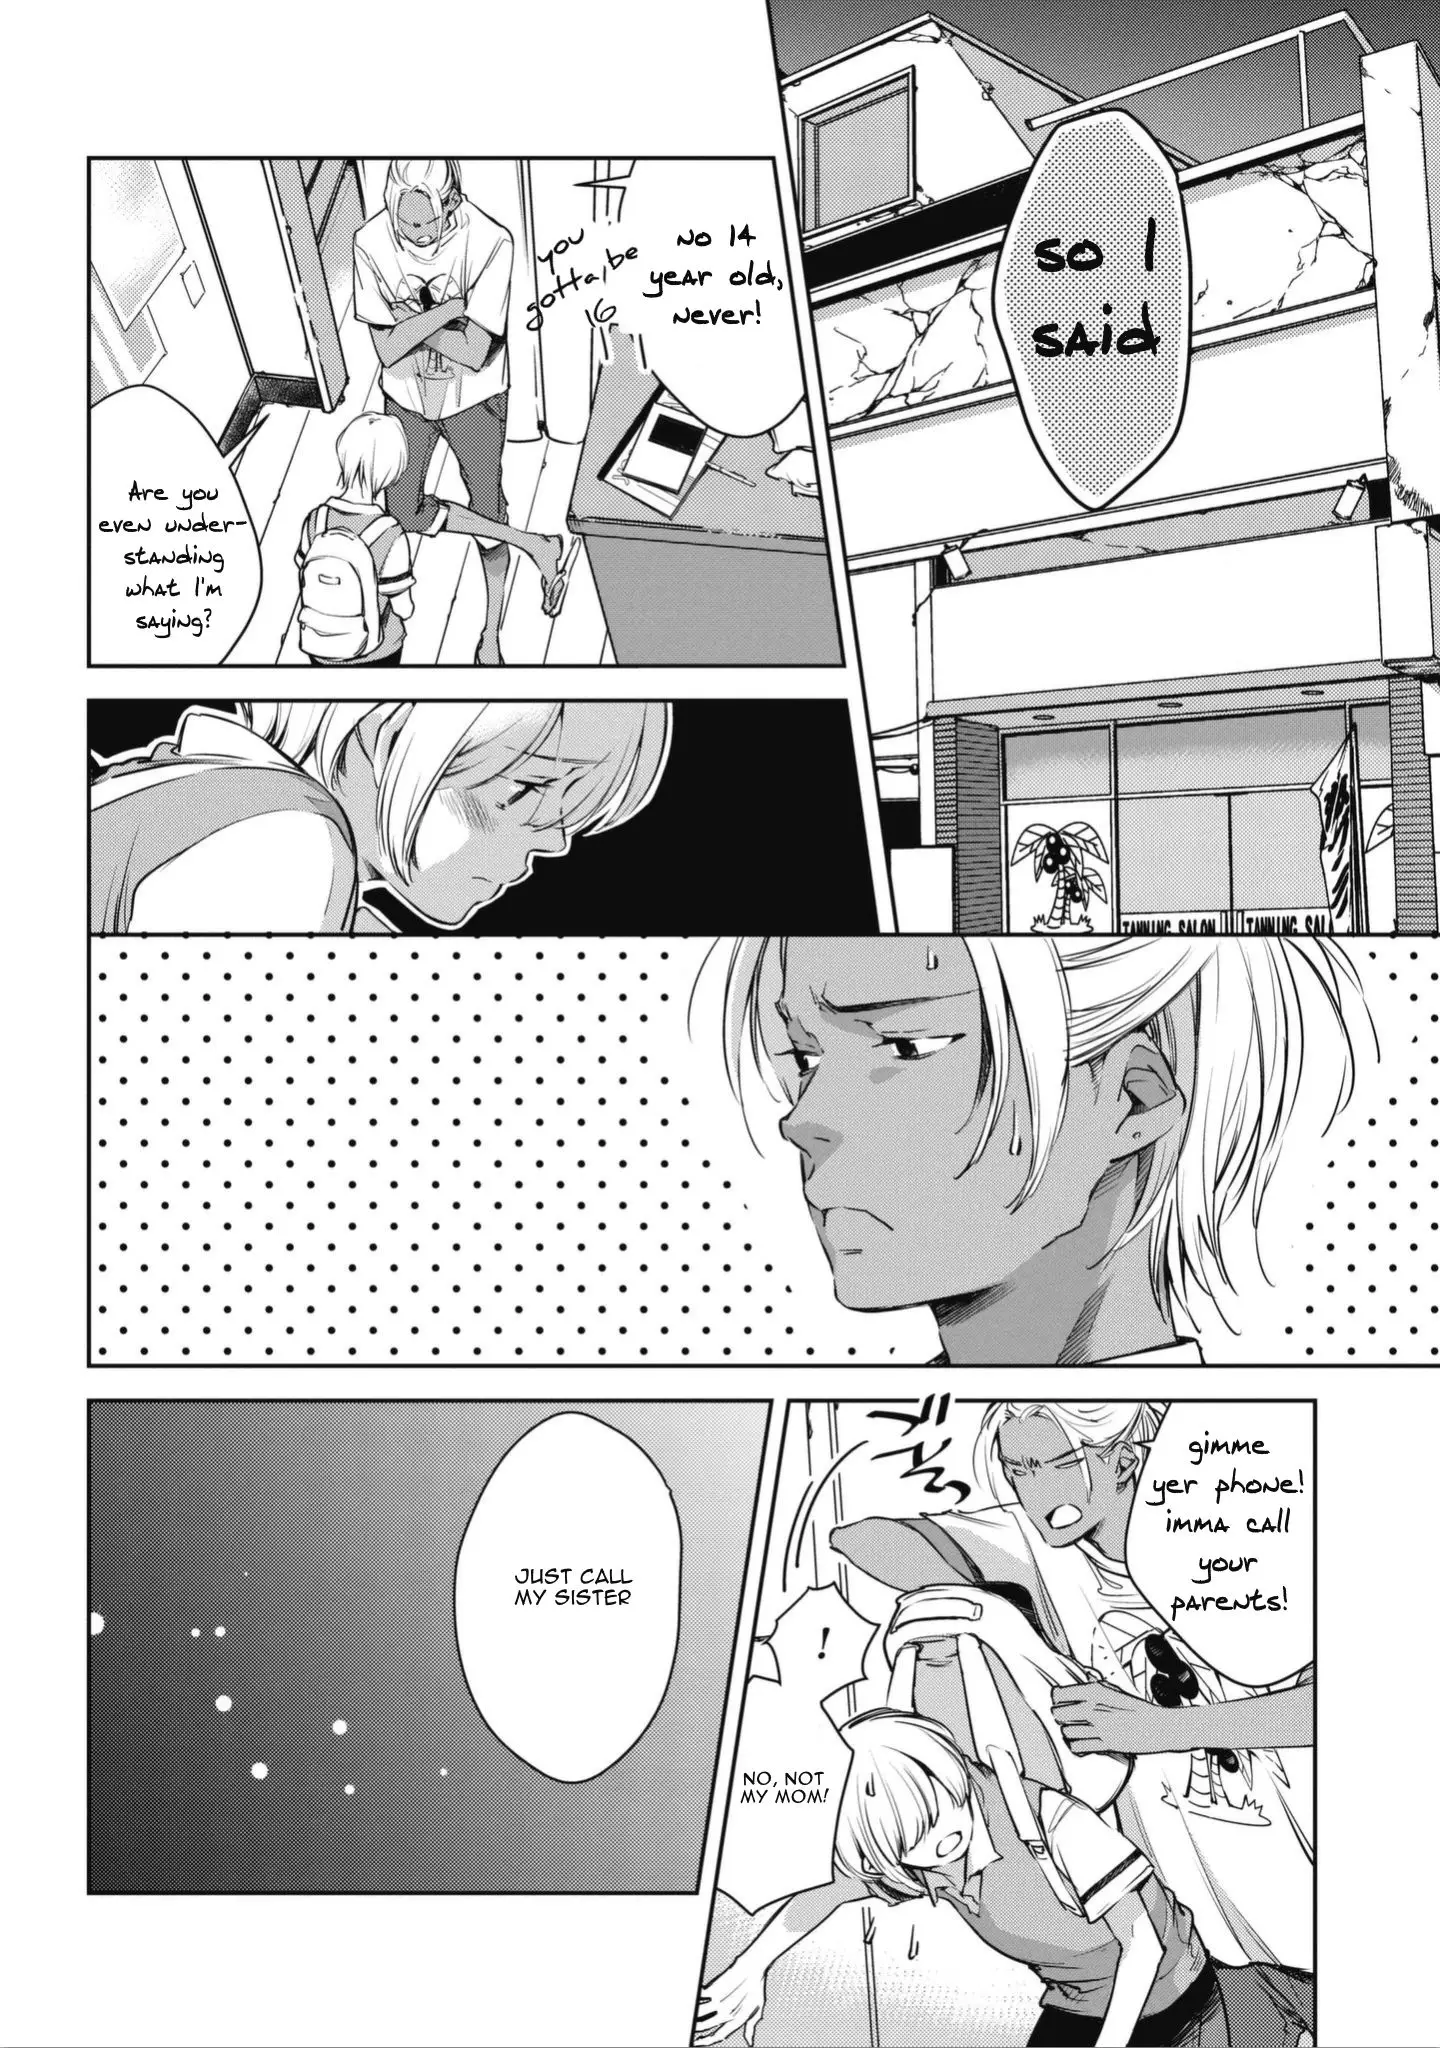 Okashiratsuki - 1 page 30